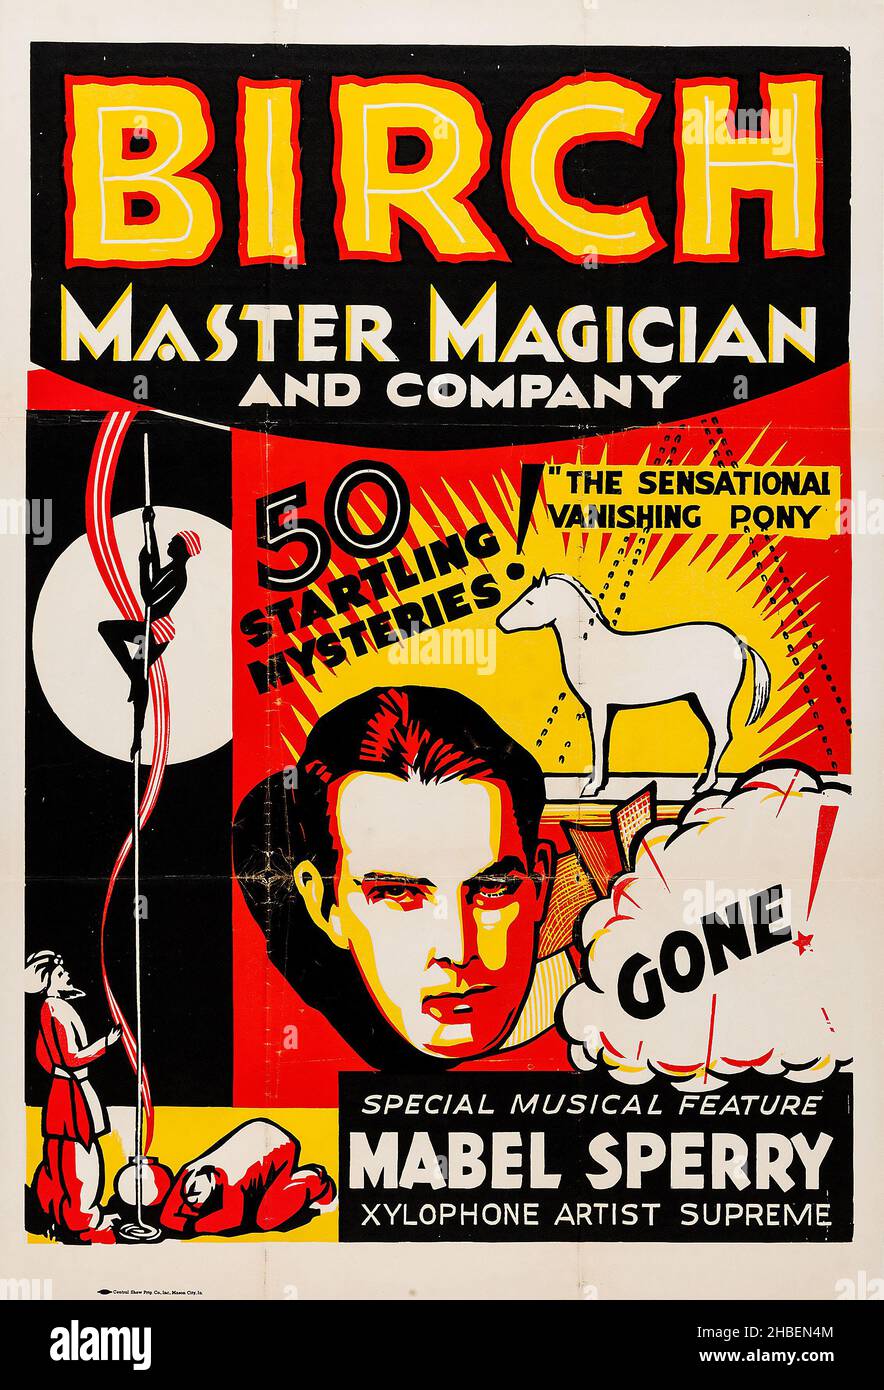 MacDonald Birch Magic Poster (Central Show Printing Co. Inc., 1930s). Poster - Magier und Kompany - 50 erstaunliche Geheimnisse! Verschwindendes Pony. Stockfoto